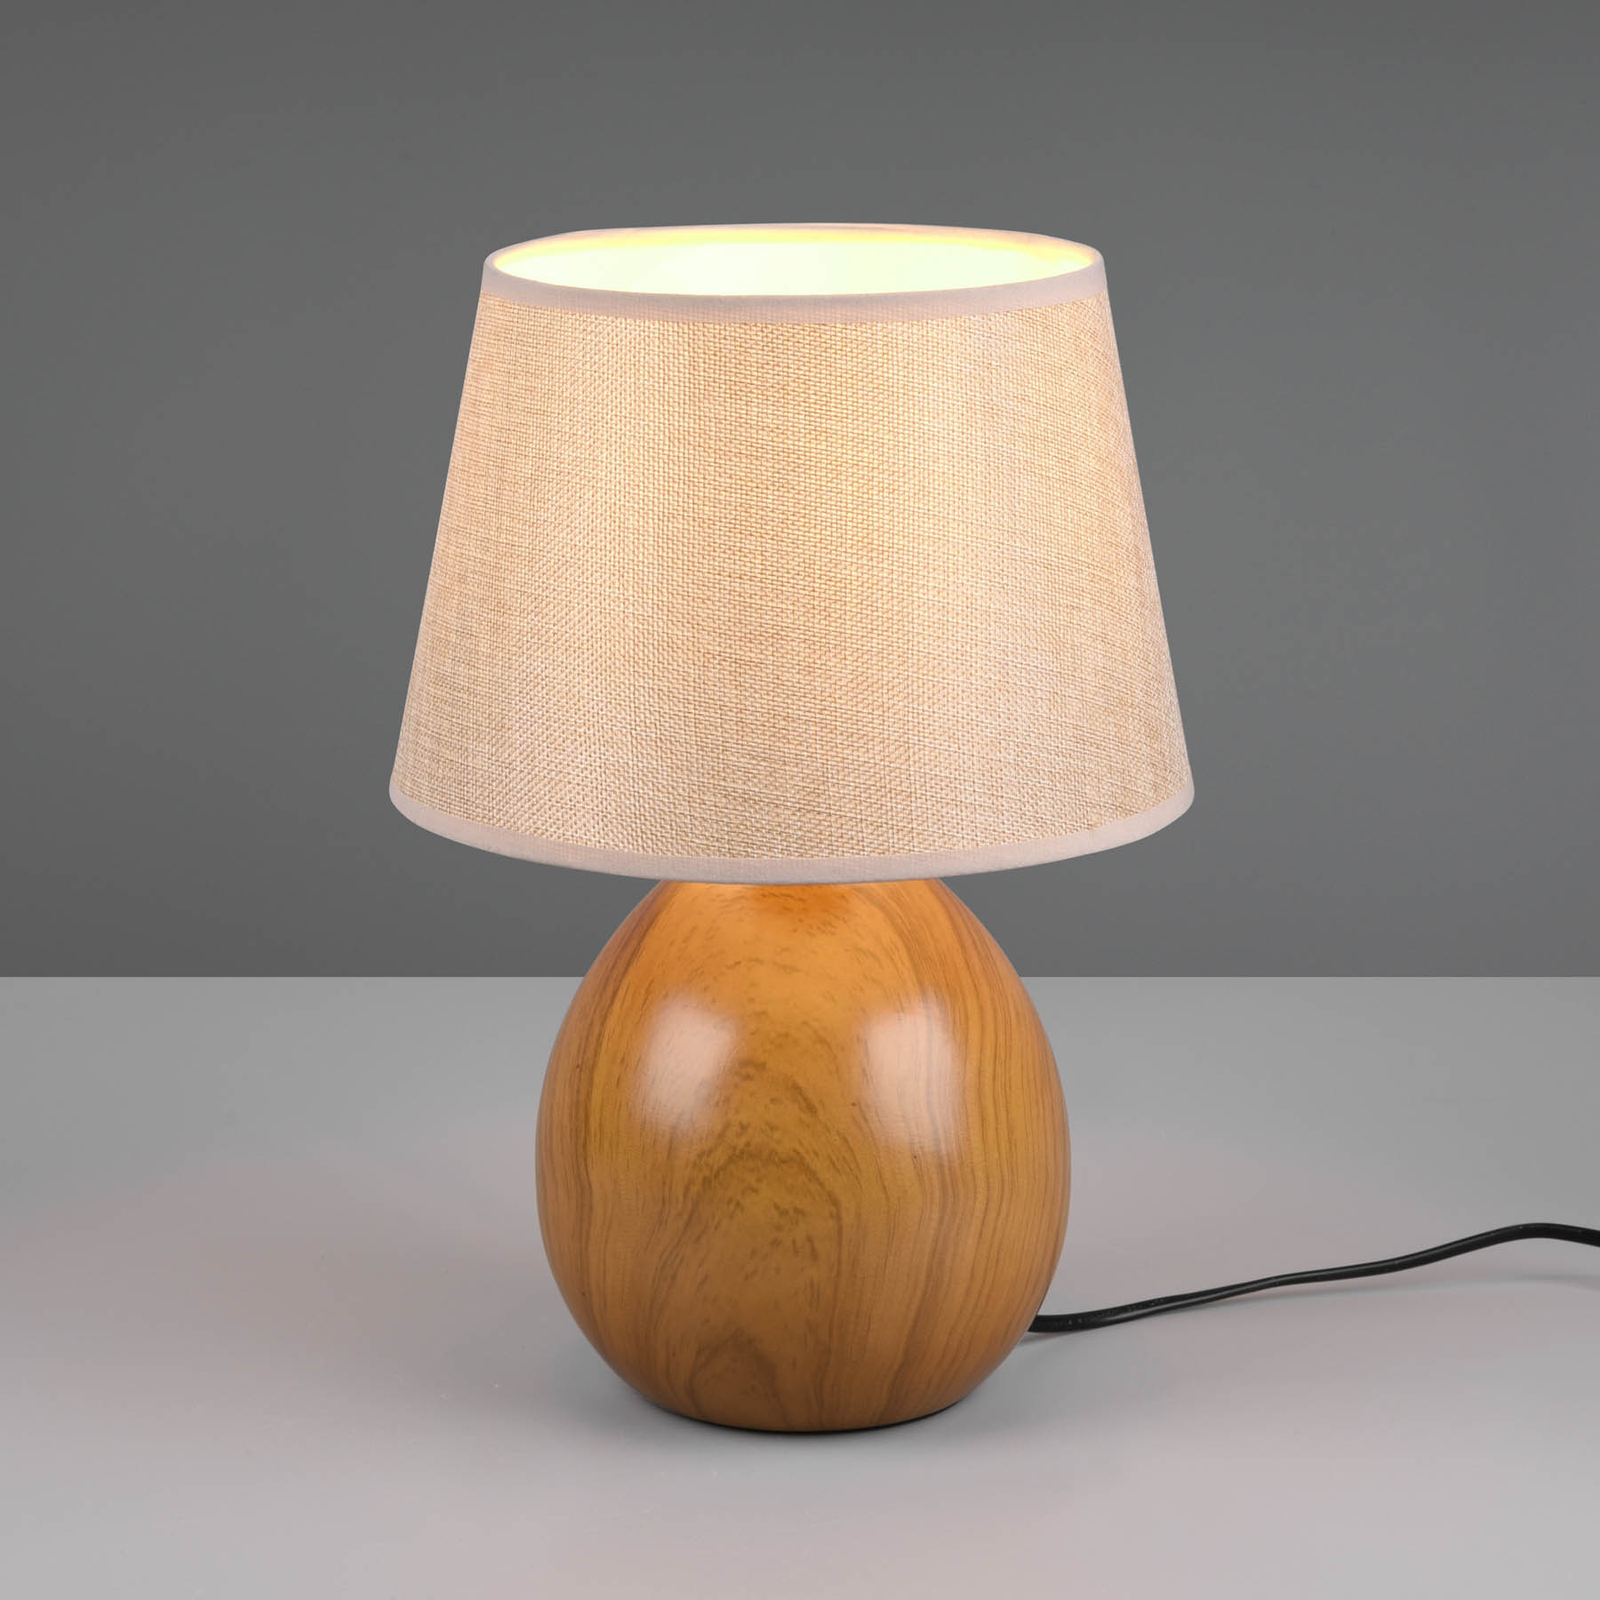 Loxur asztali lámpa, 35cm magas, bézs/fahatású